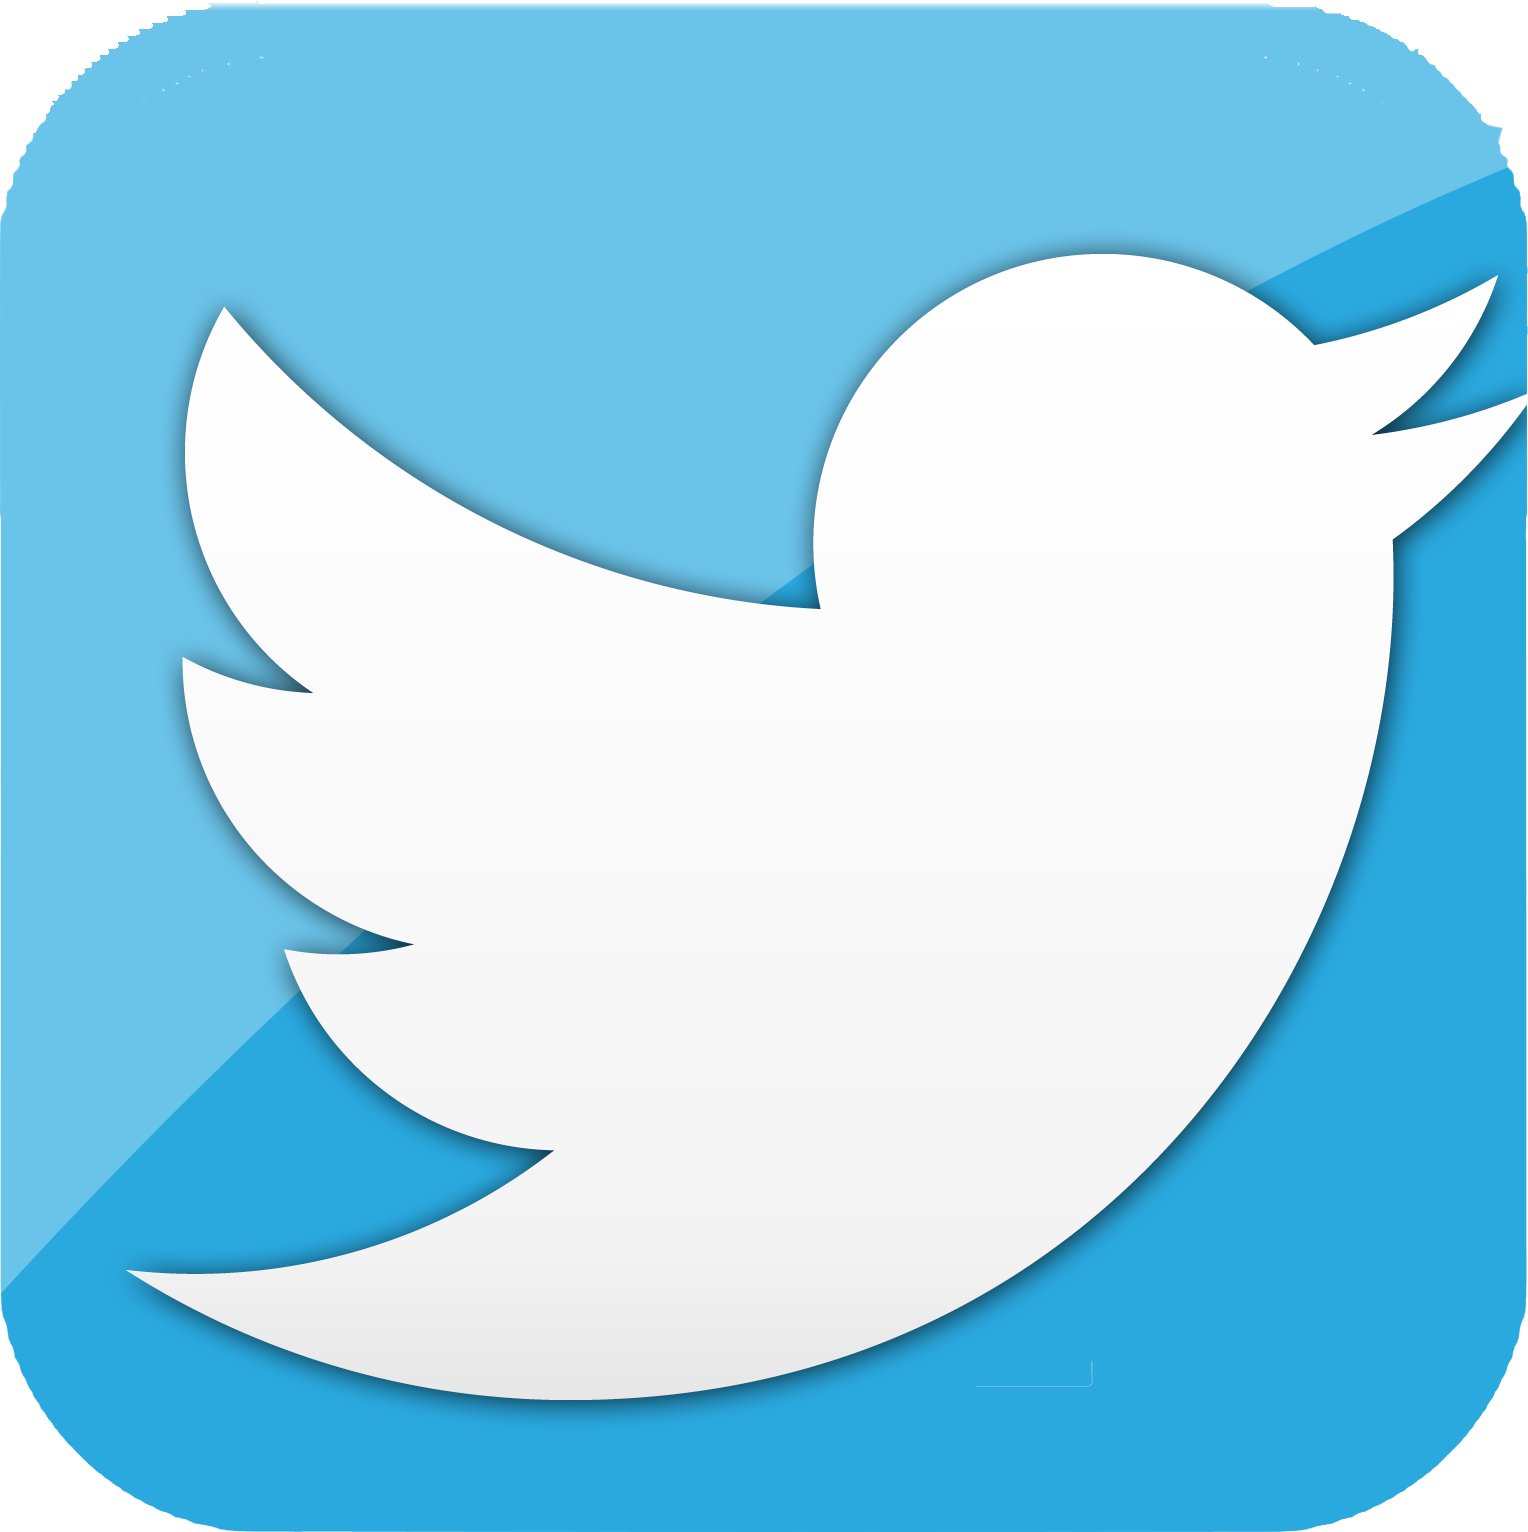 TwitterBird - Twitter PNG Log